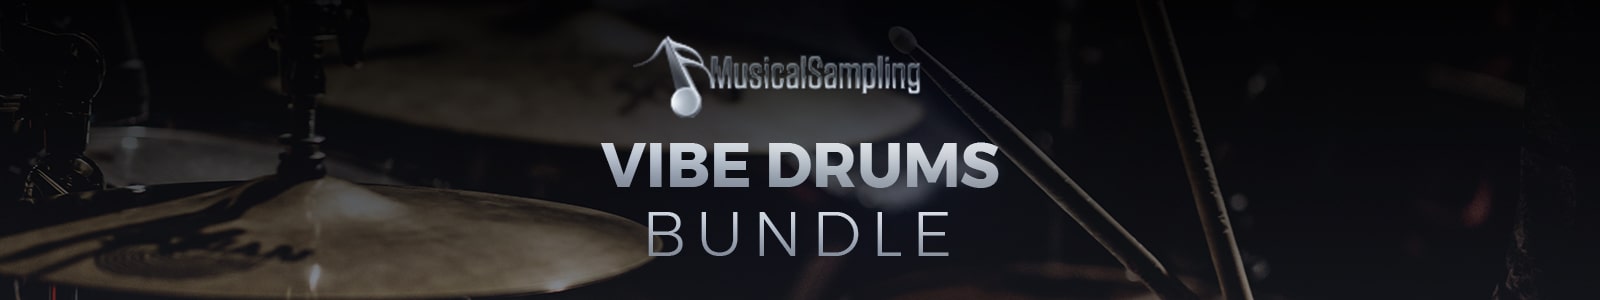 vibe drums bundle